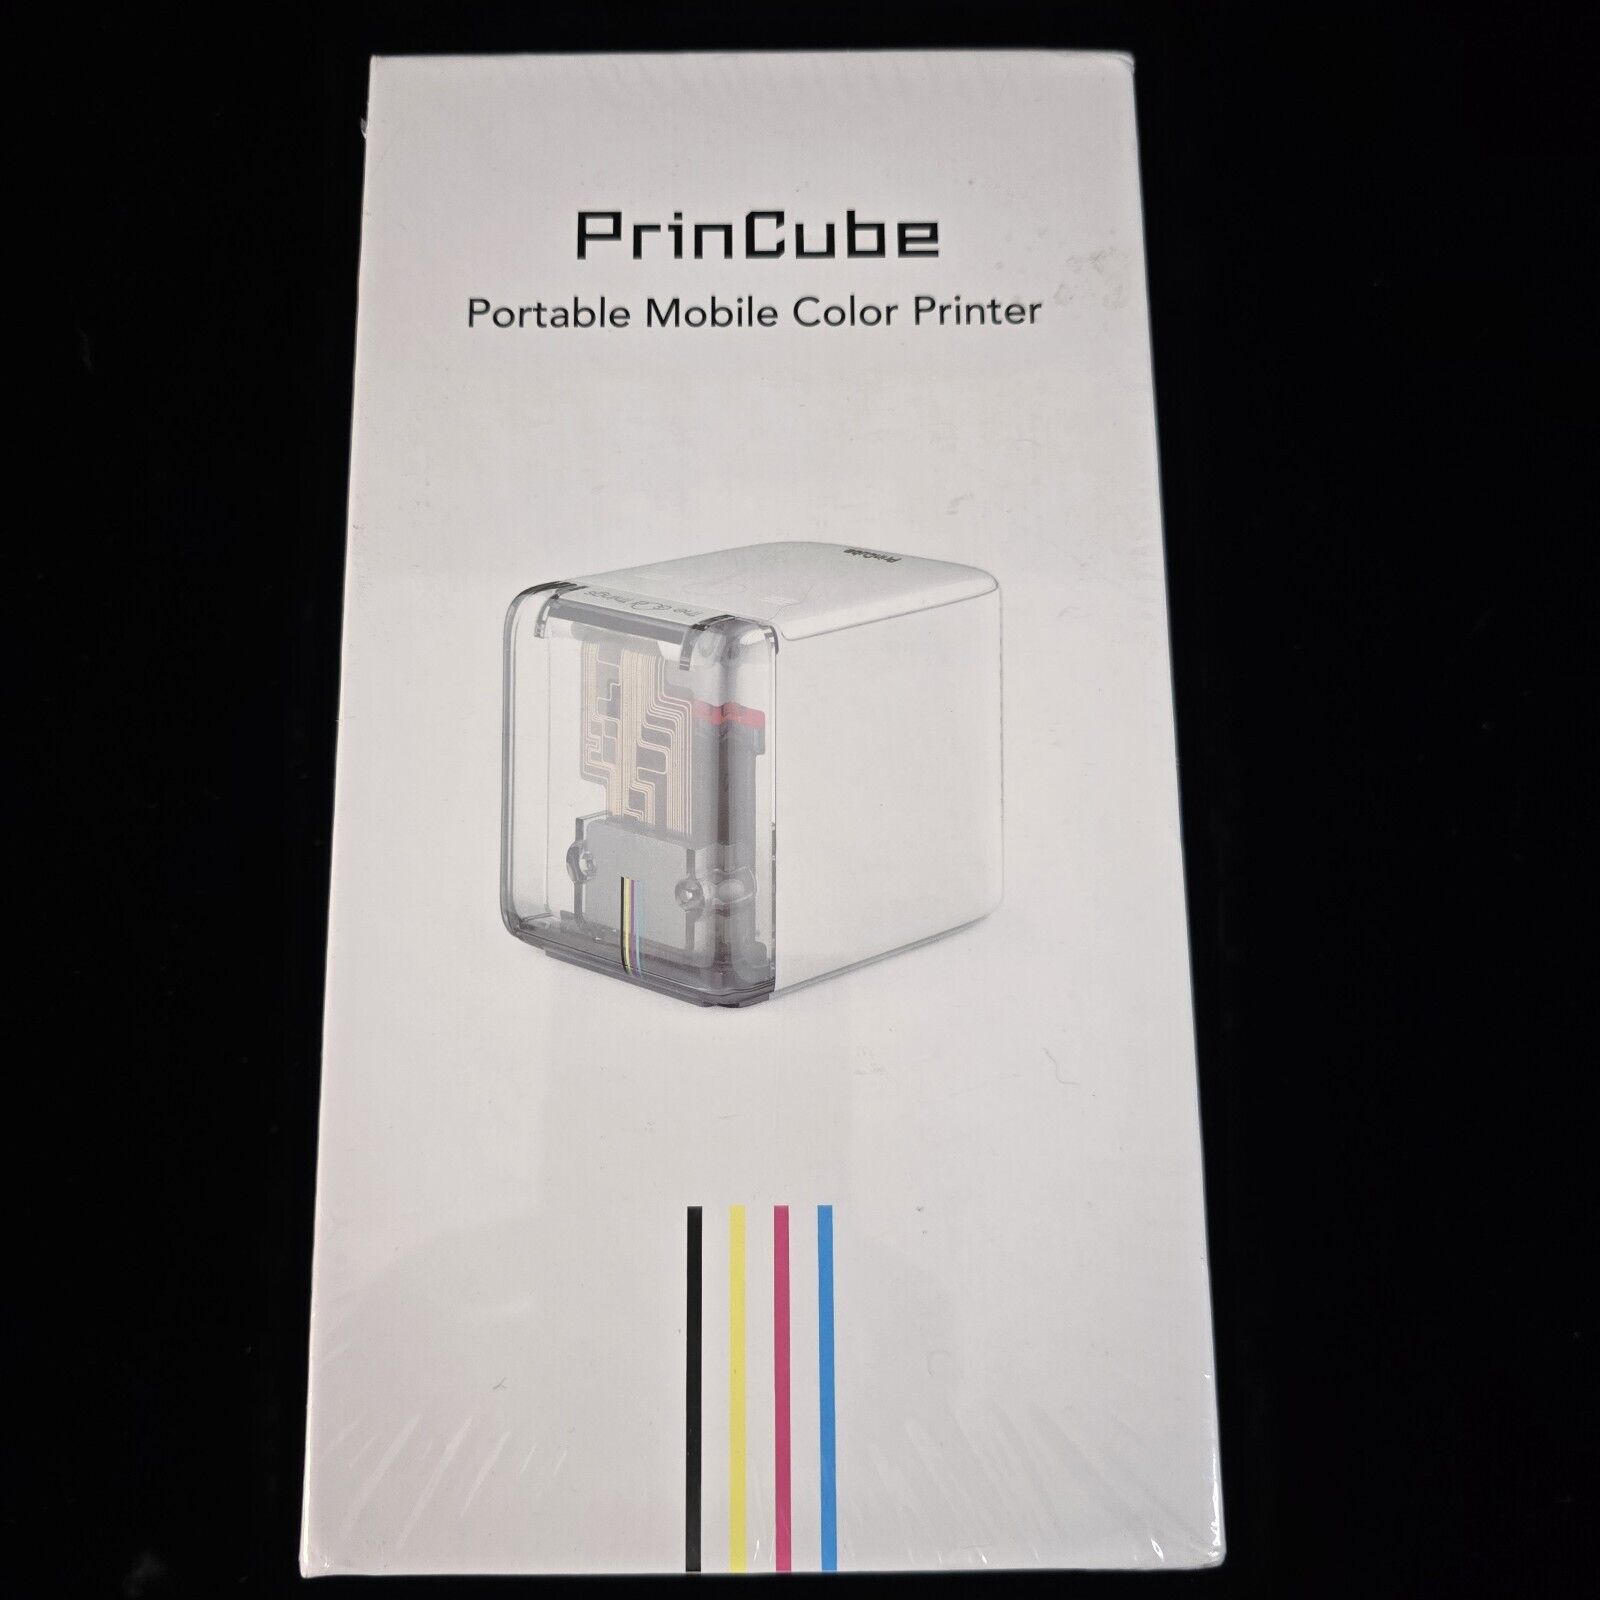 New PrinCube Portable Mobile Color Printer Mini Printer